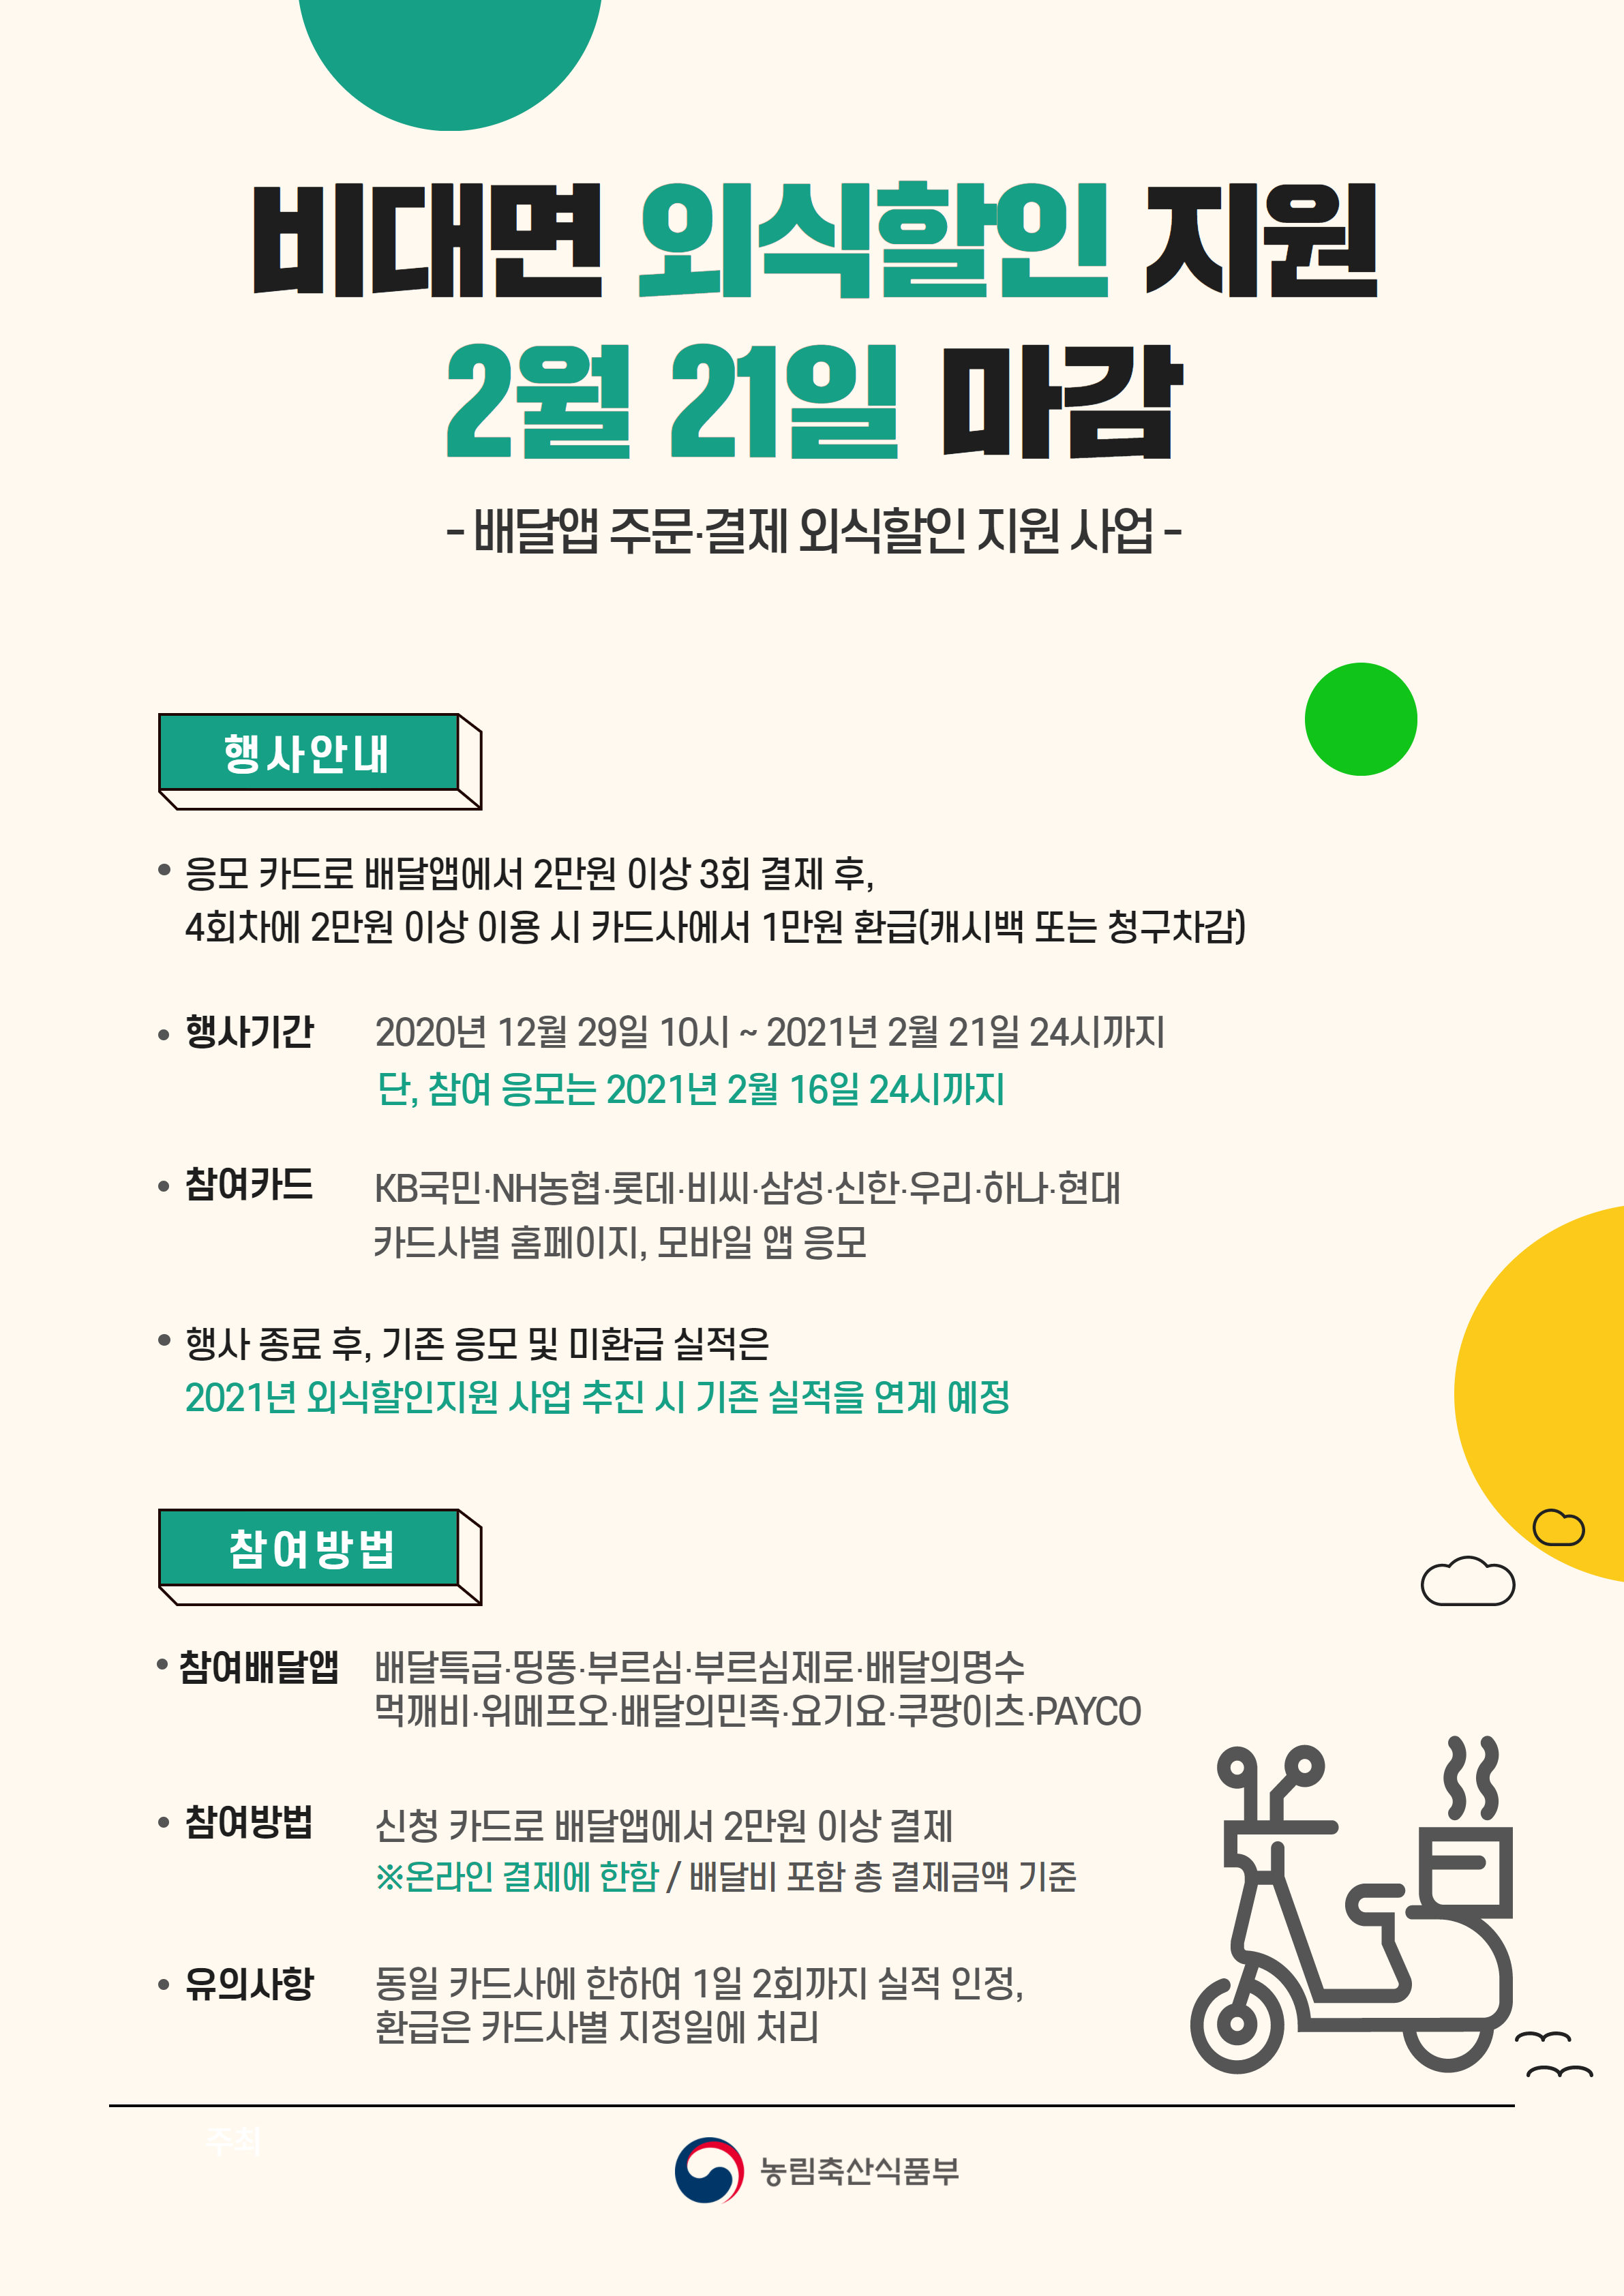 비대면 외식할인 지원, 2월 21일 마감됩니다. 210210 비대면외식할인마감_포스터_최종.png